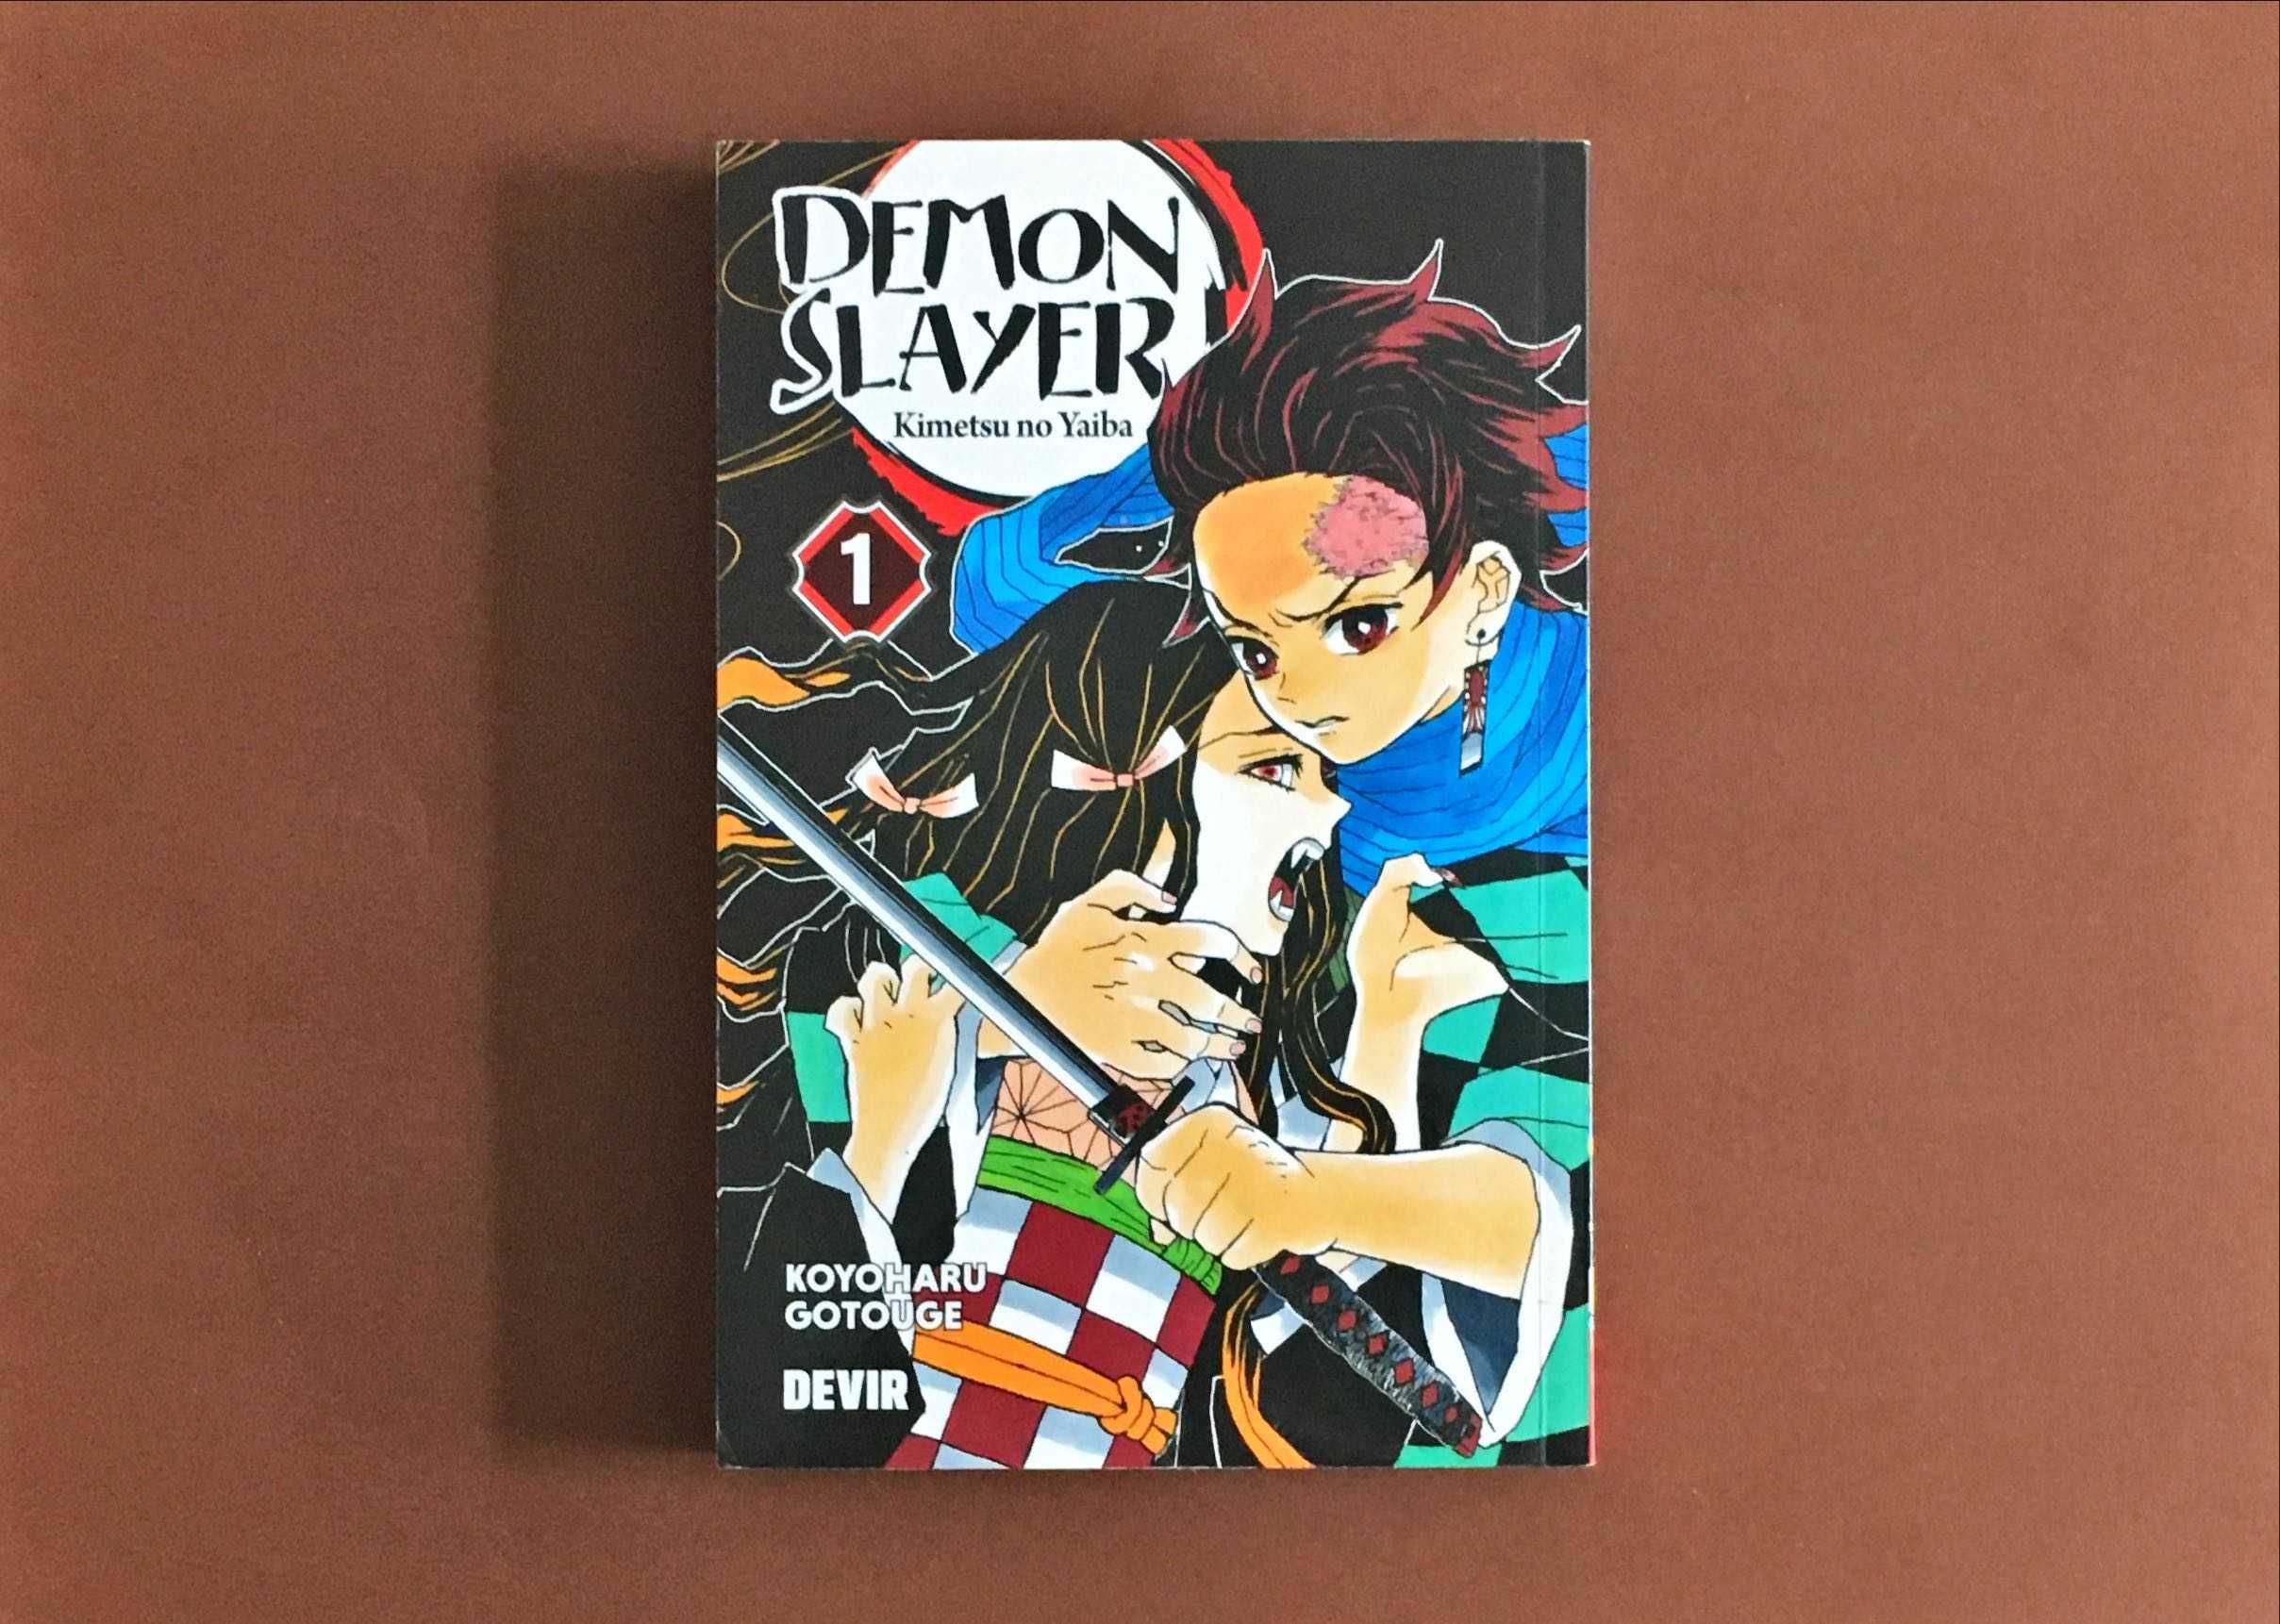 LIVRO Manga Mangá  [7€ cada] Death Note Naruto DIVERSOS LIVROS